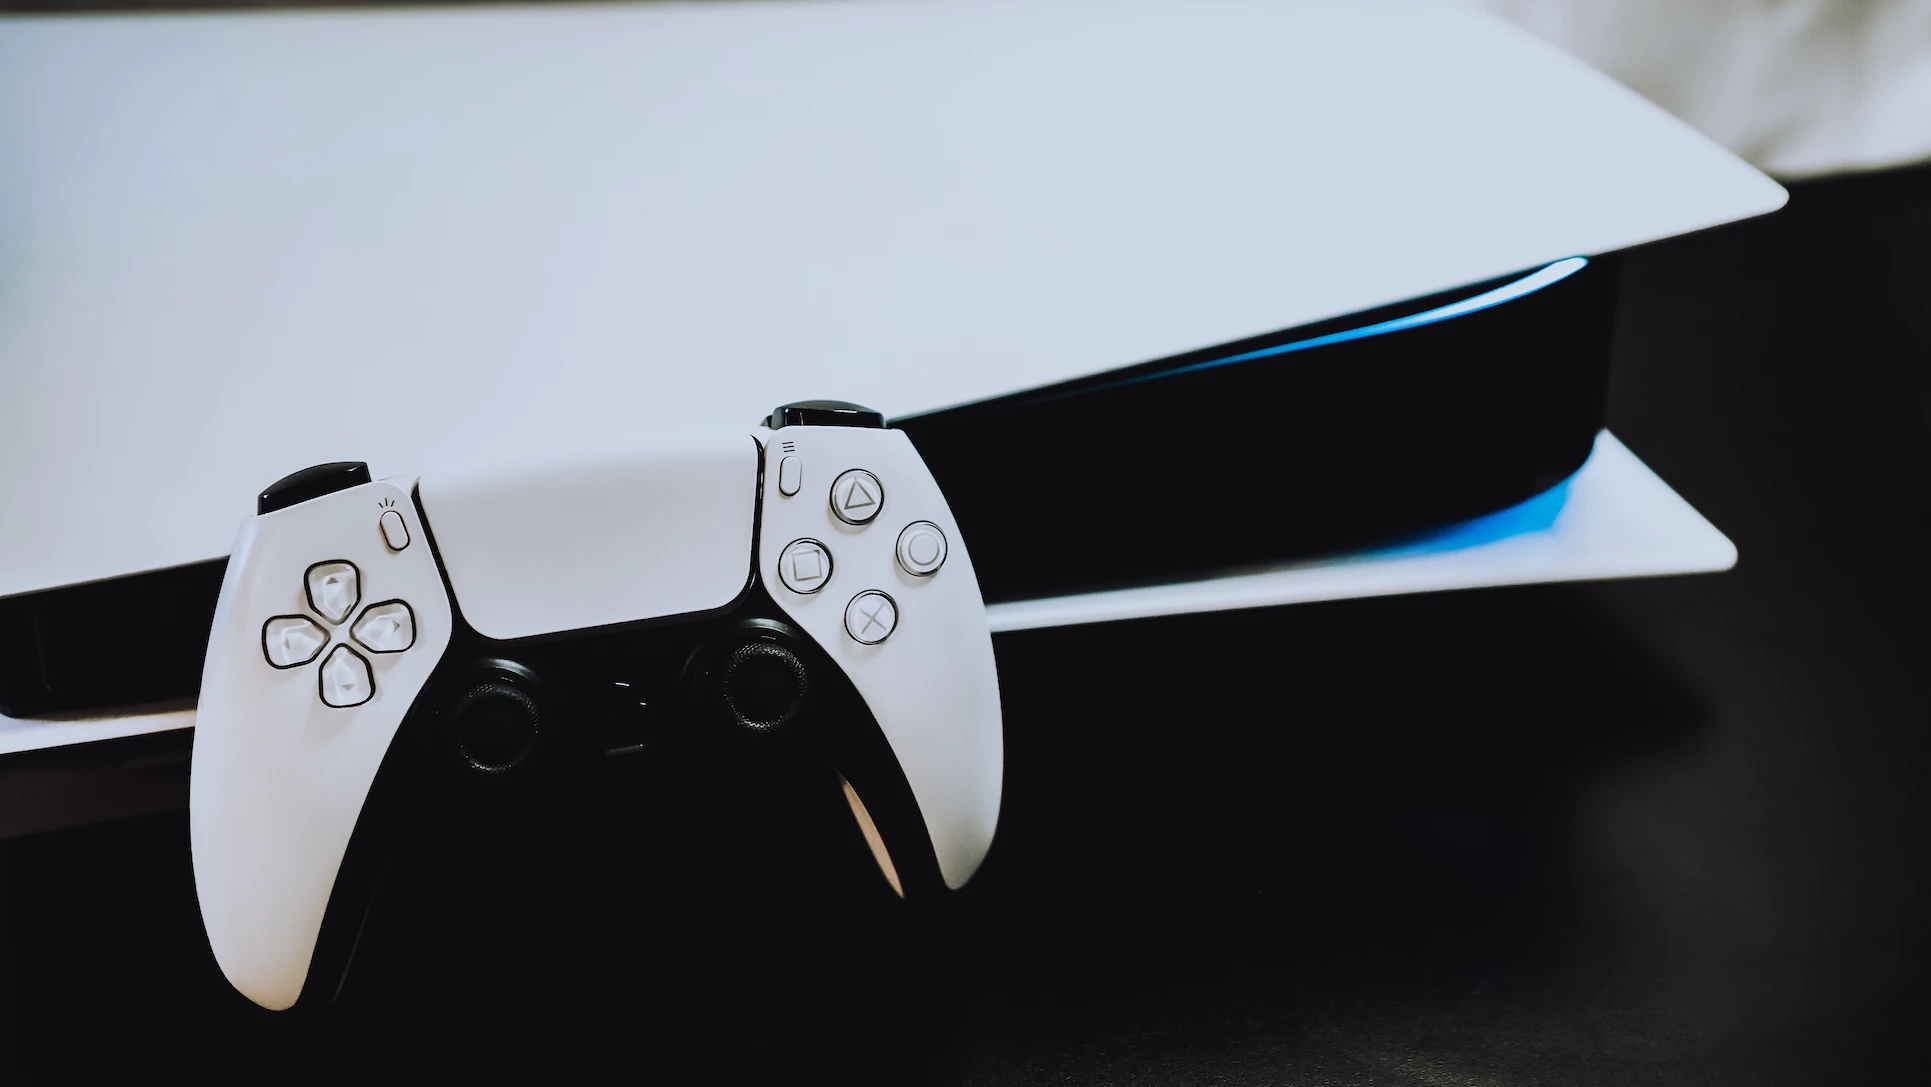 Anunciada la PS5 Slim. PlayStation confirma un secreto a voces y desvela  fecha de lanzamiento, precio y más detalles - PlayStation 5 - 3DJuegos